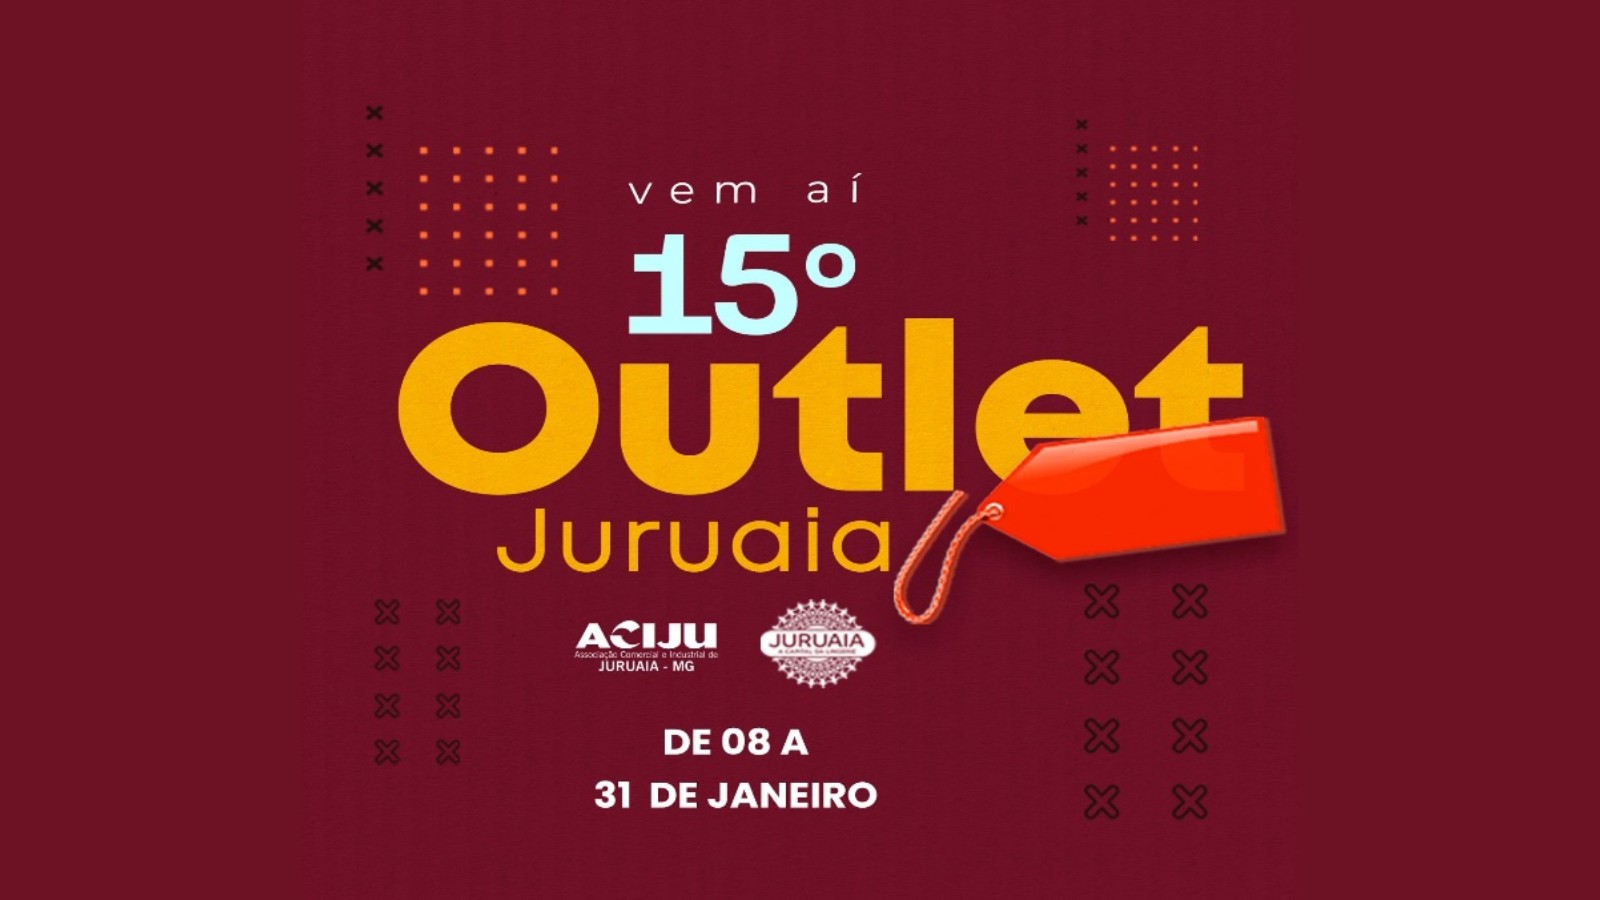 Capital da Lingerie - Juruaia reúne mais de 50 marcas em sua 15ª edição do Outlet